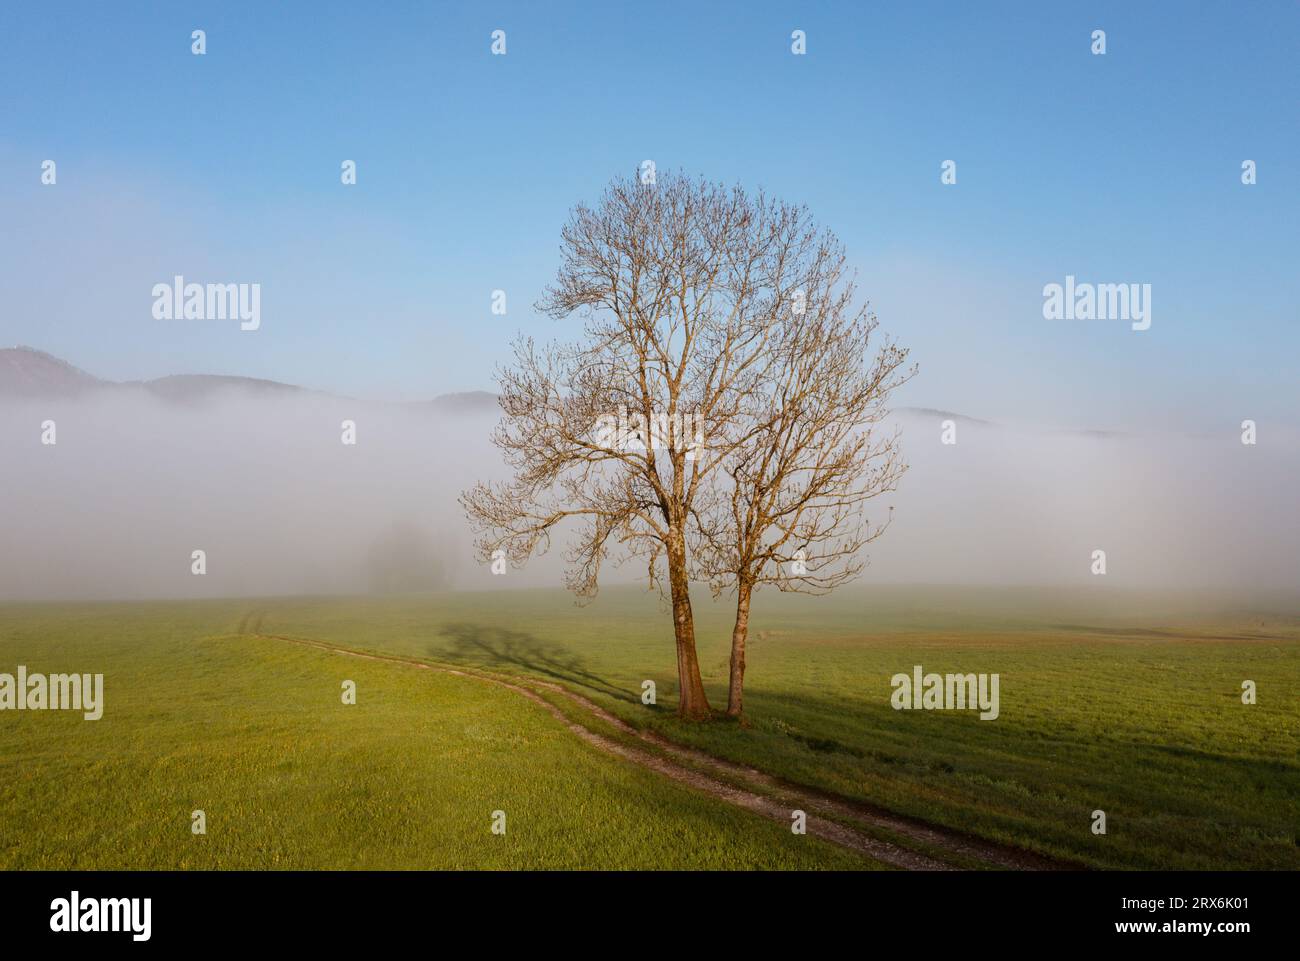 Austria, alta Austria, albero nudo in un prato coperto da nebbia Foto Stock